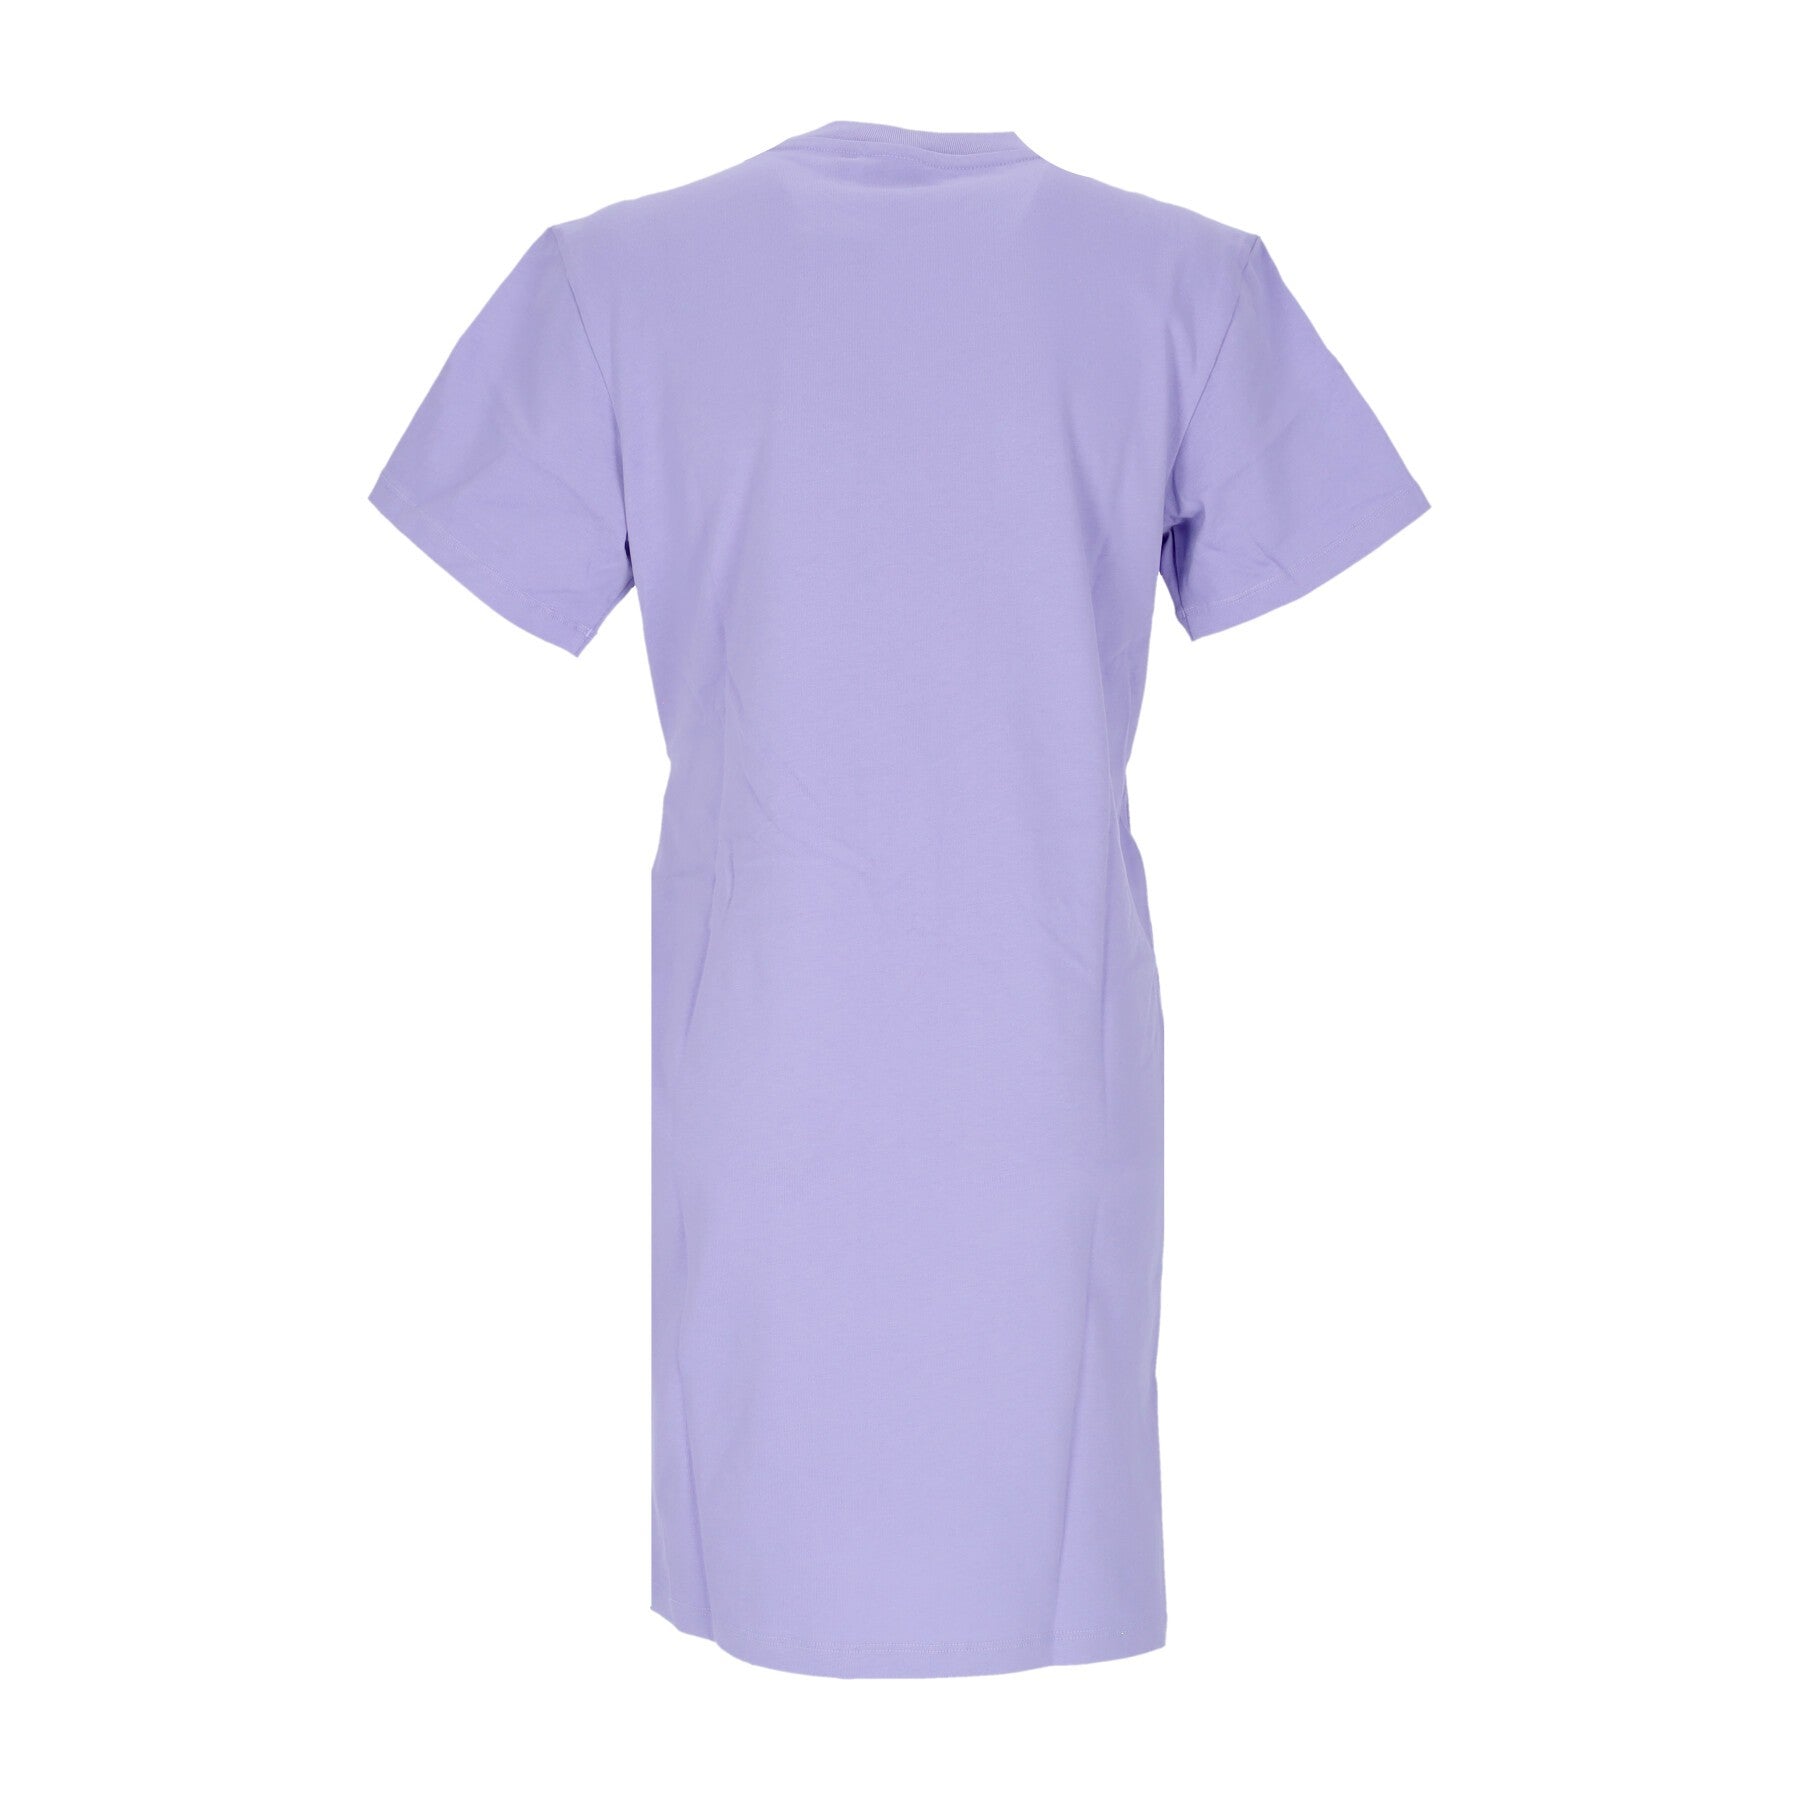 Women's Tee Dress Light Purple